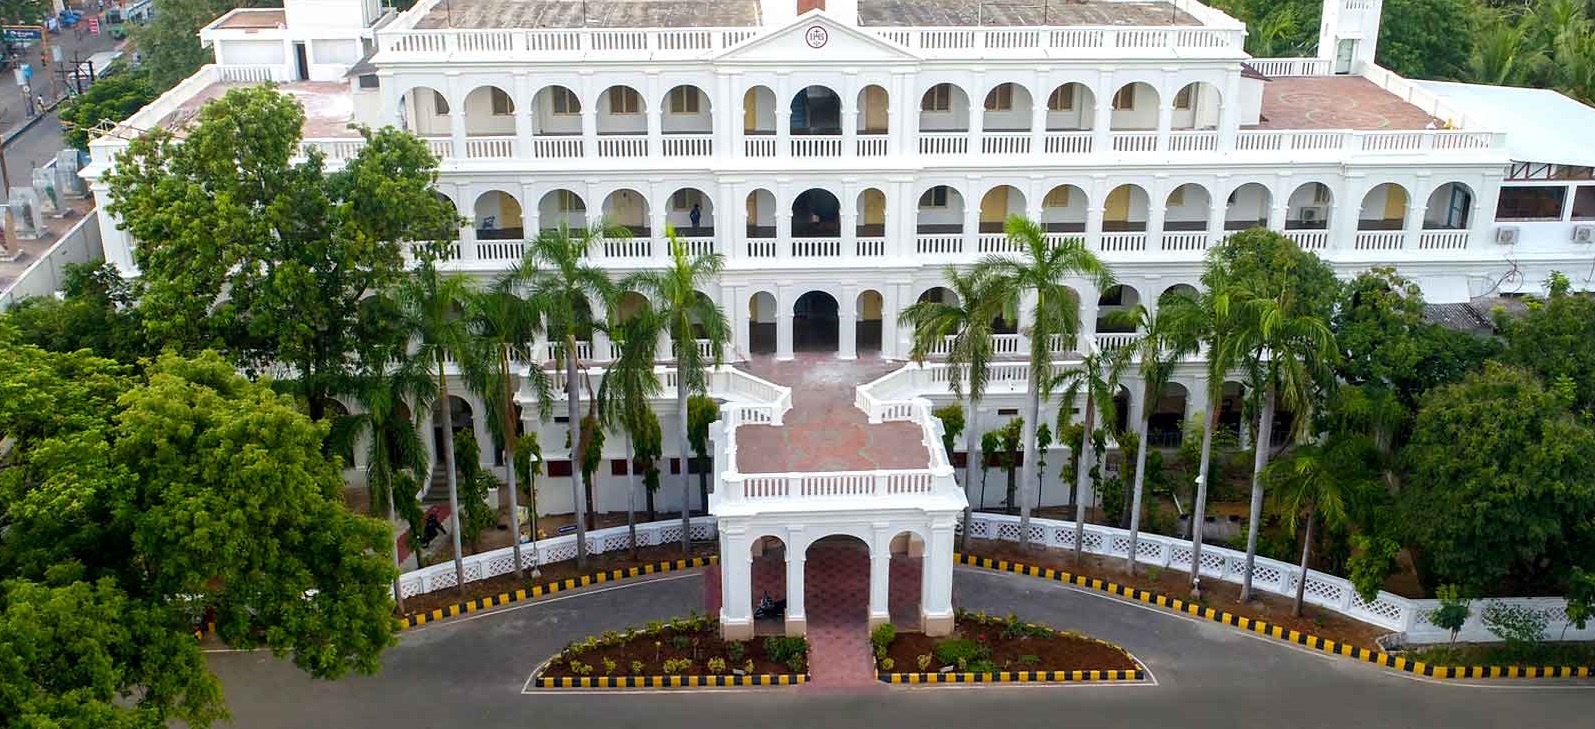 St. Joseph's College, Tiruchirappalli